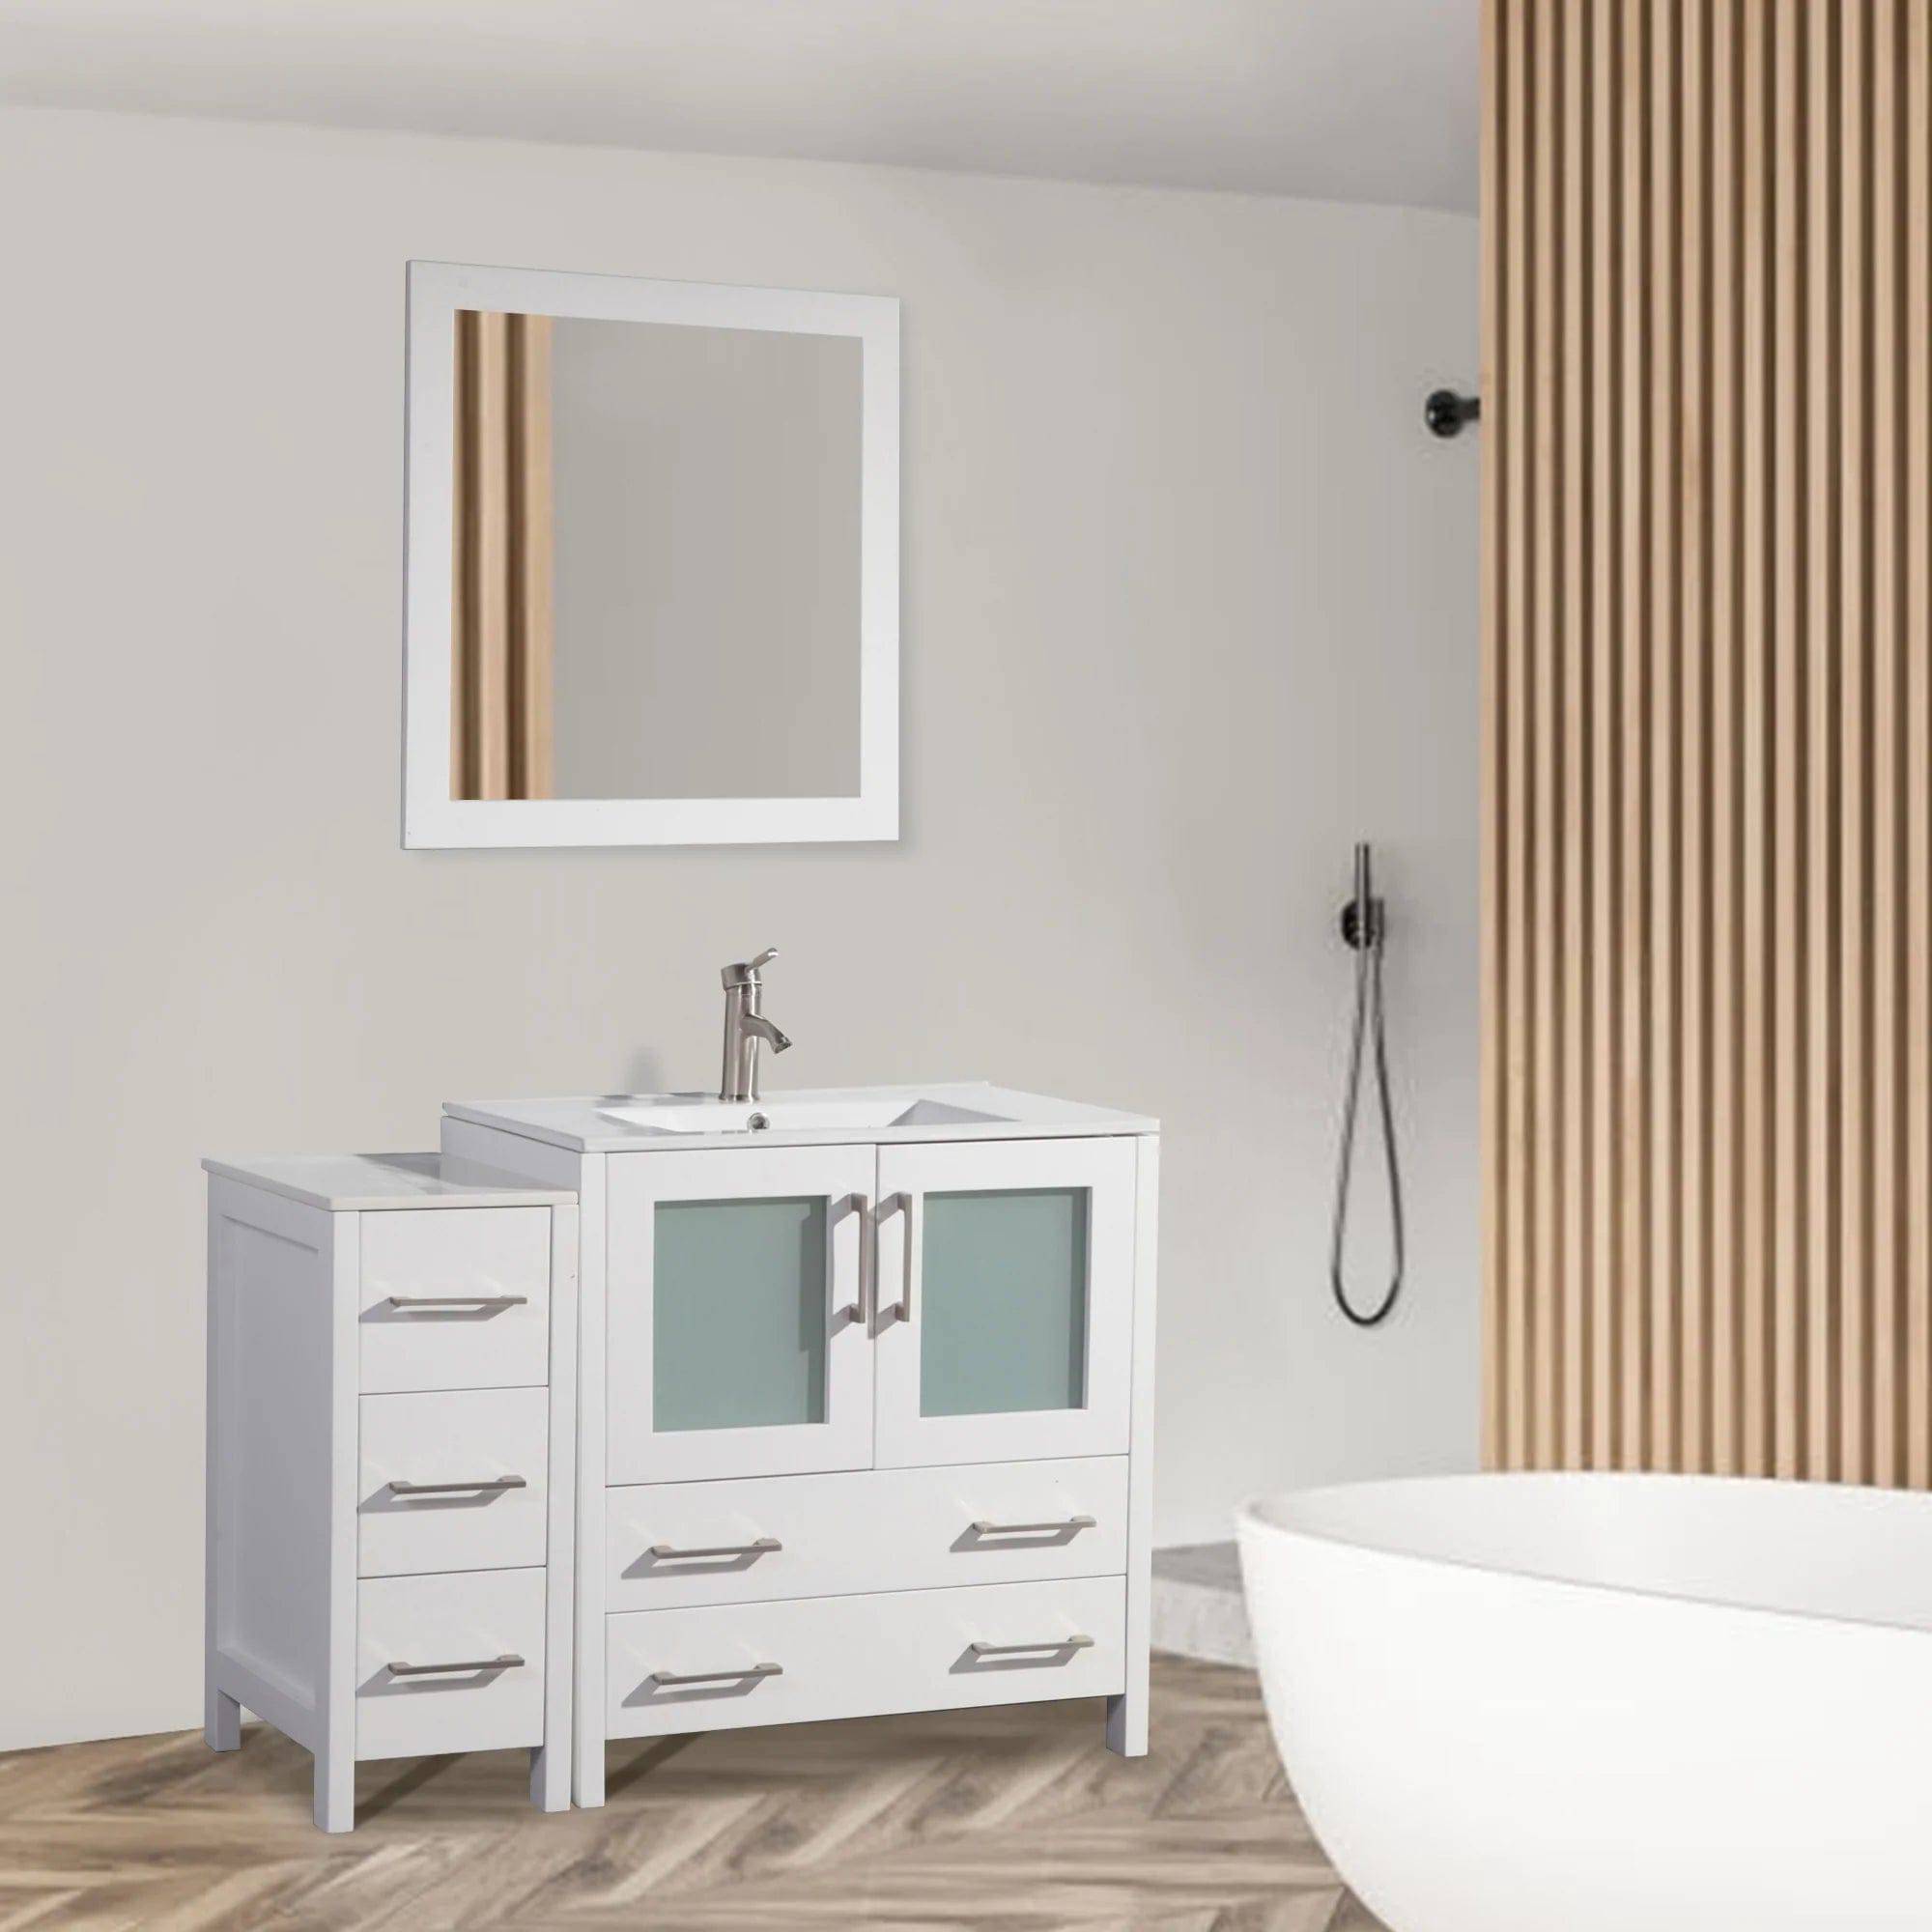 42 in. Single Sink Bathroom Vanity Set in White - Decohub Home